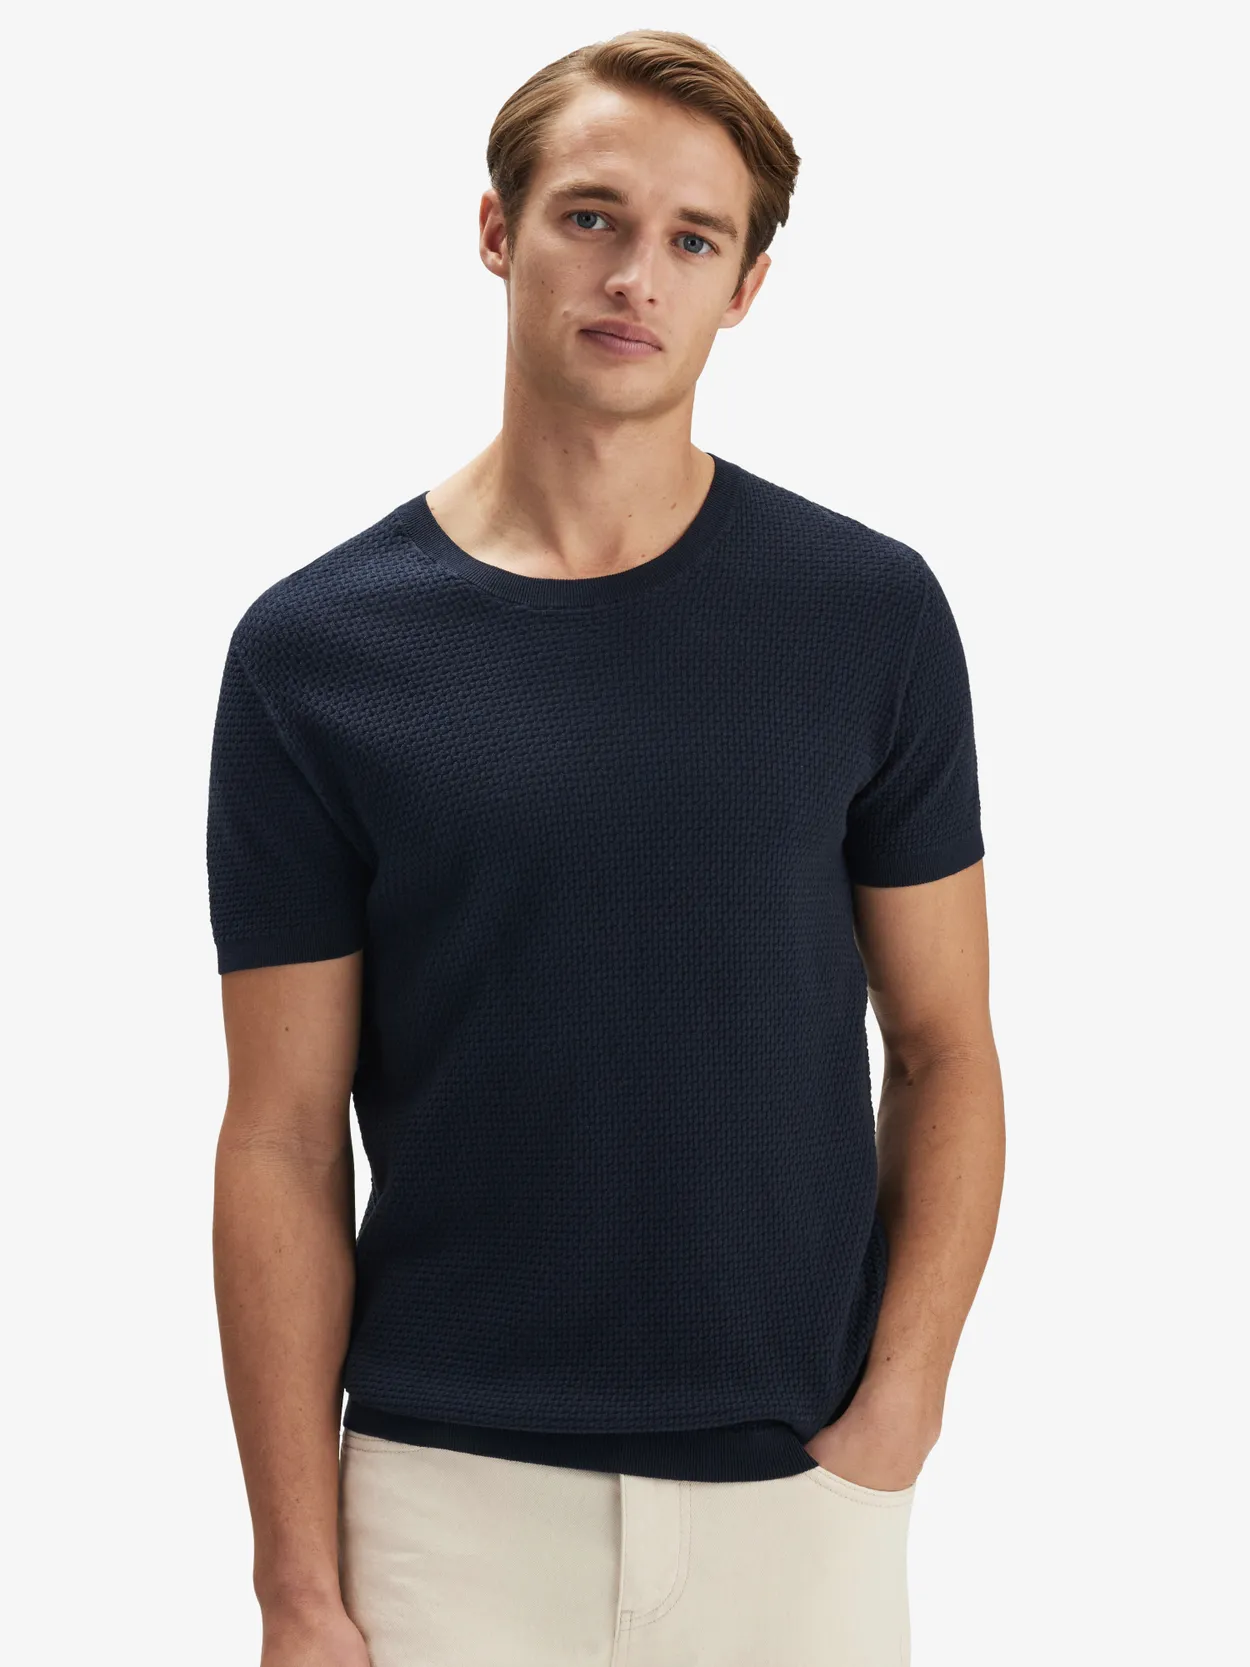 Blå T-shirt Hørblend